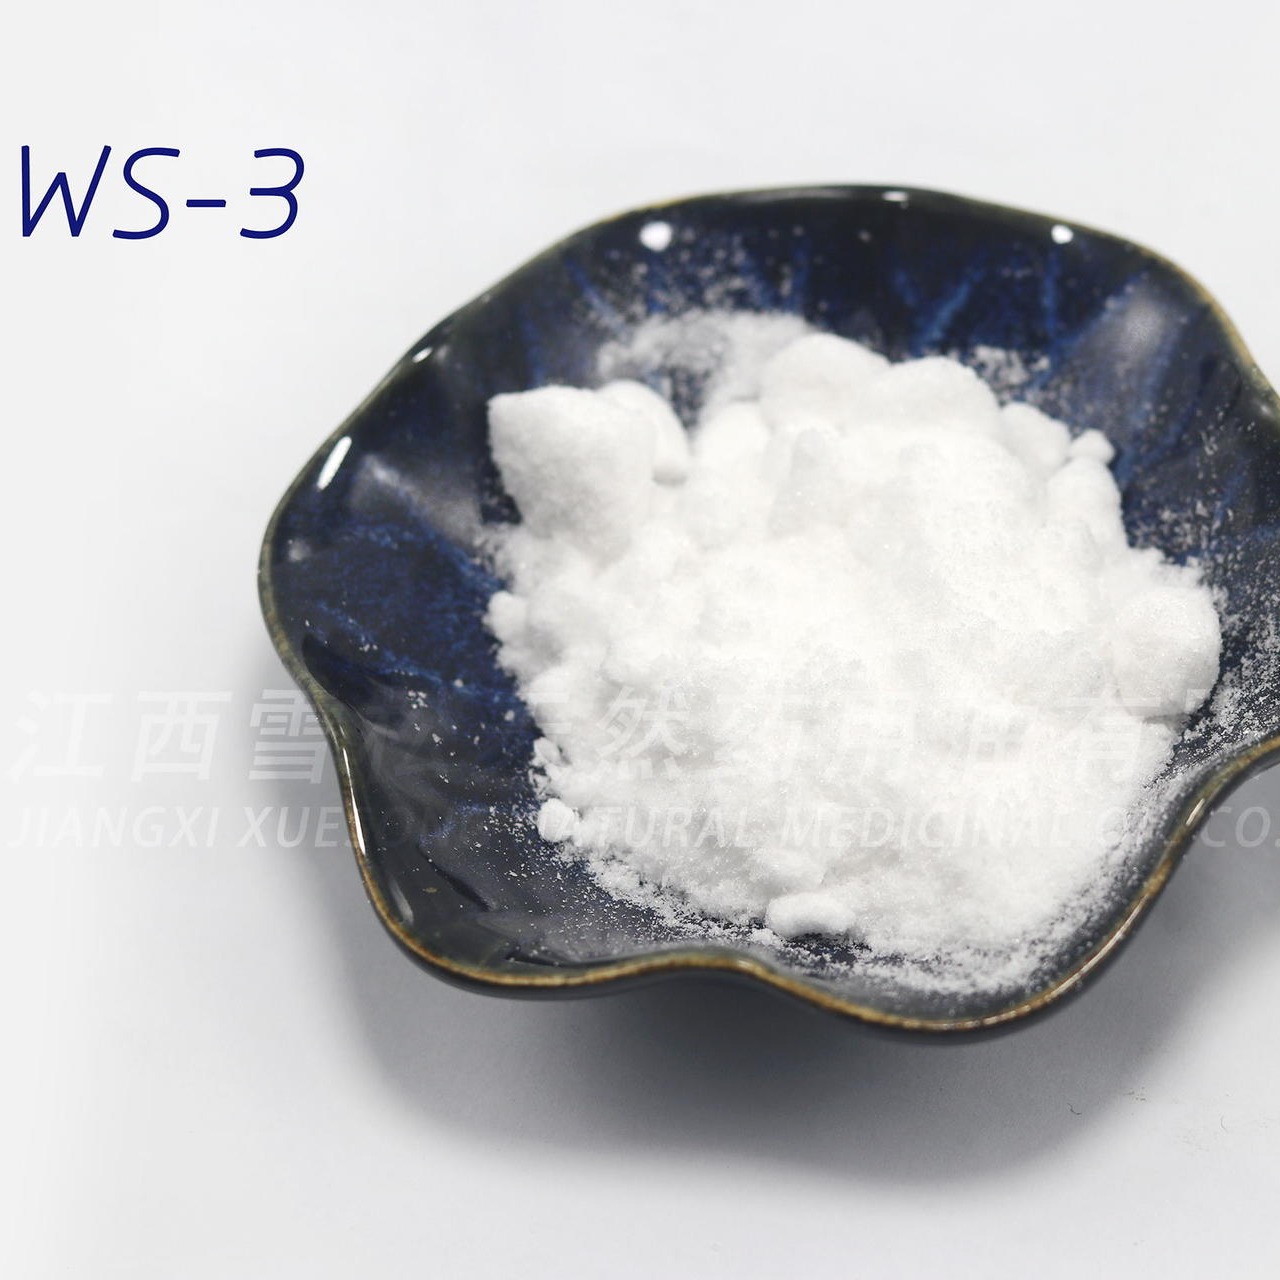 WS-3 凉味剂 原料现货 江西雪松厂家供应